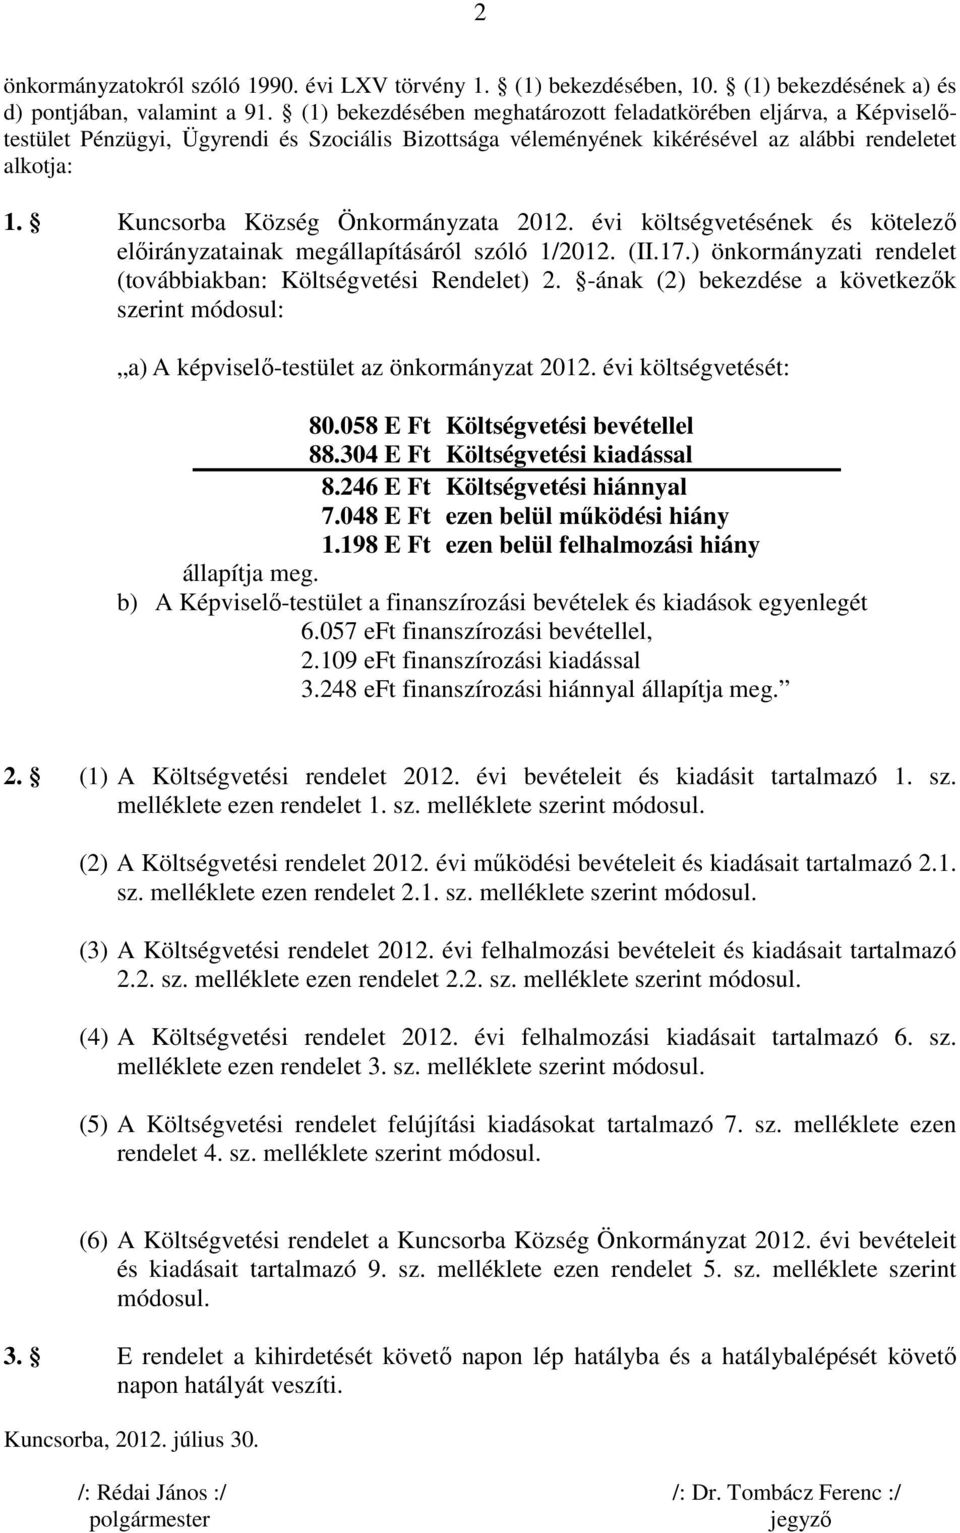 Kuncsorba Község Önkormányzata 2012. évi költségvetésének és kötelezı elıirányzatainak megállapításáról szóló 1/2012. (II.17.) önkormányzati rendelet (továbbiakban: Költségvetési Rendelet) 2.